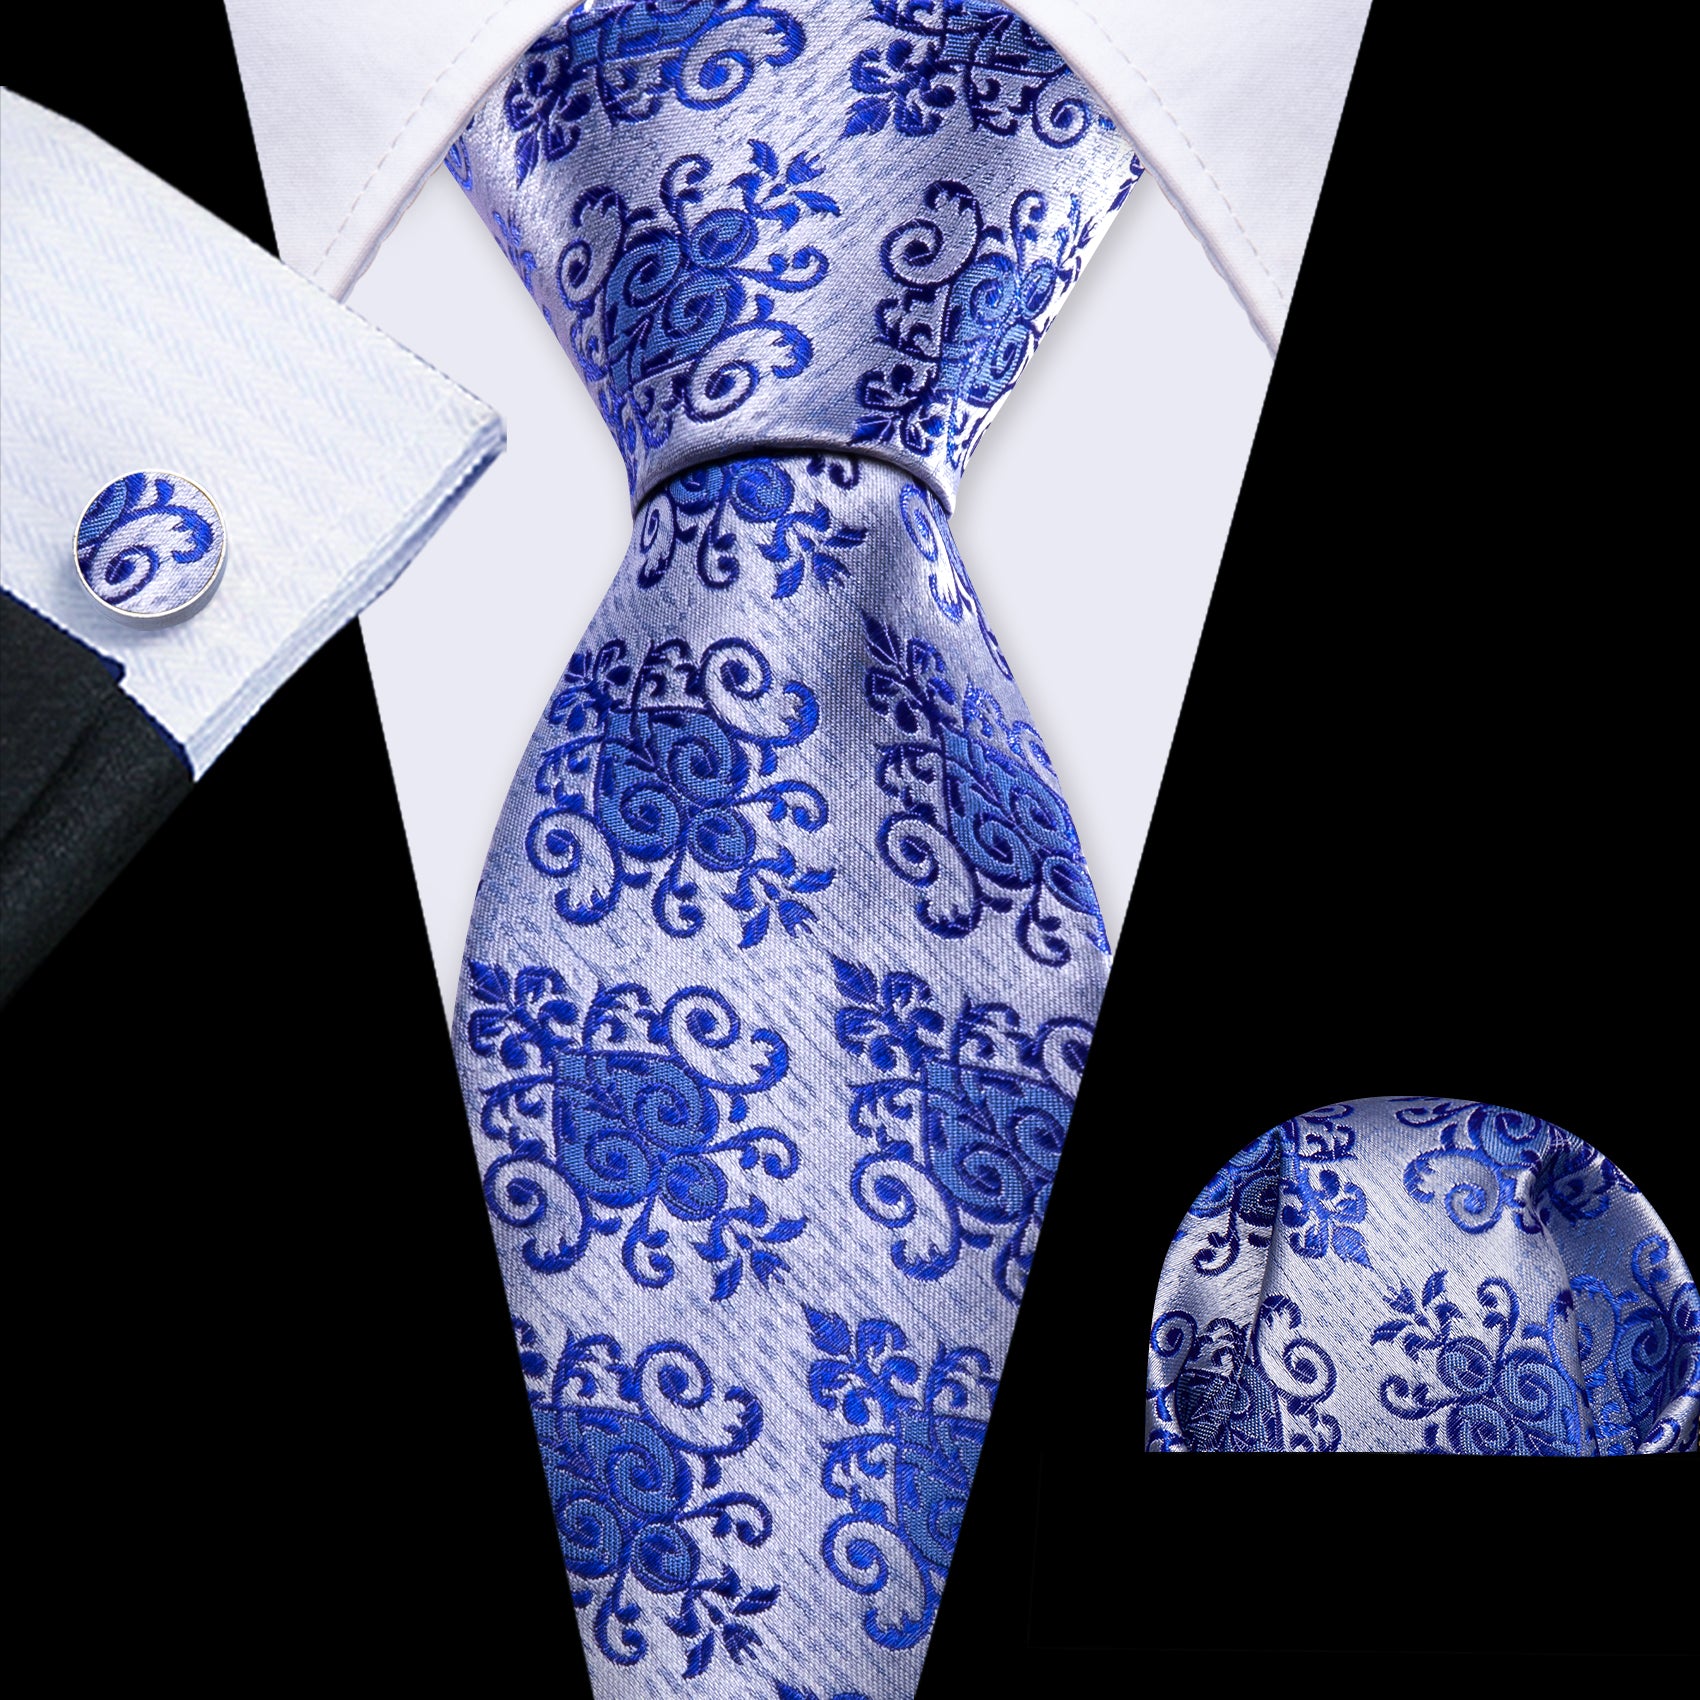 Blue Silver Floral Silk Tie Handkerchief Cufflinks Set